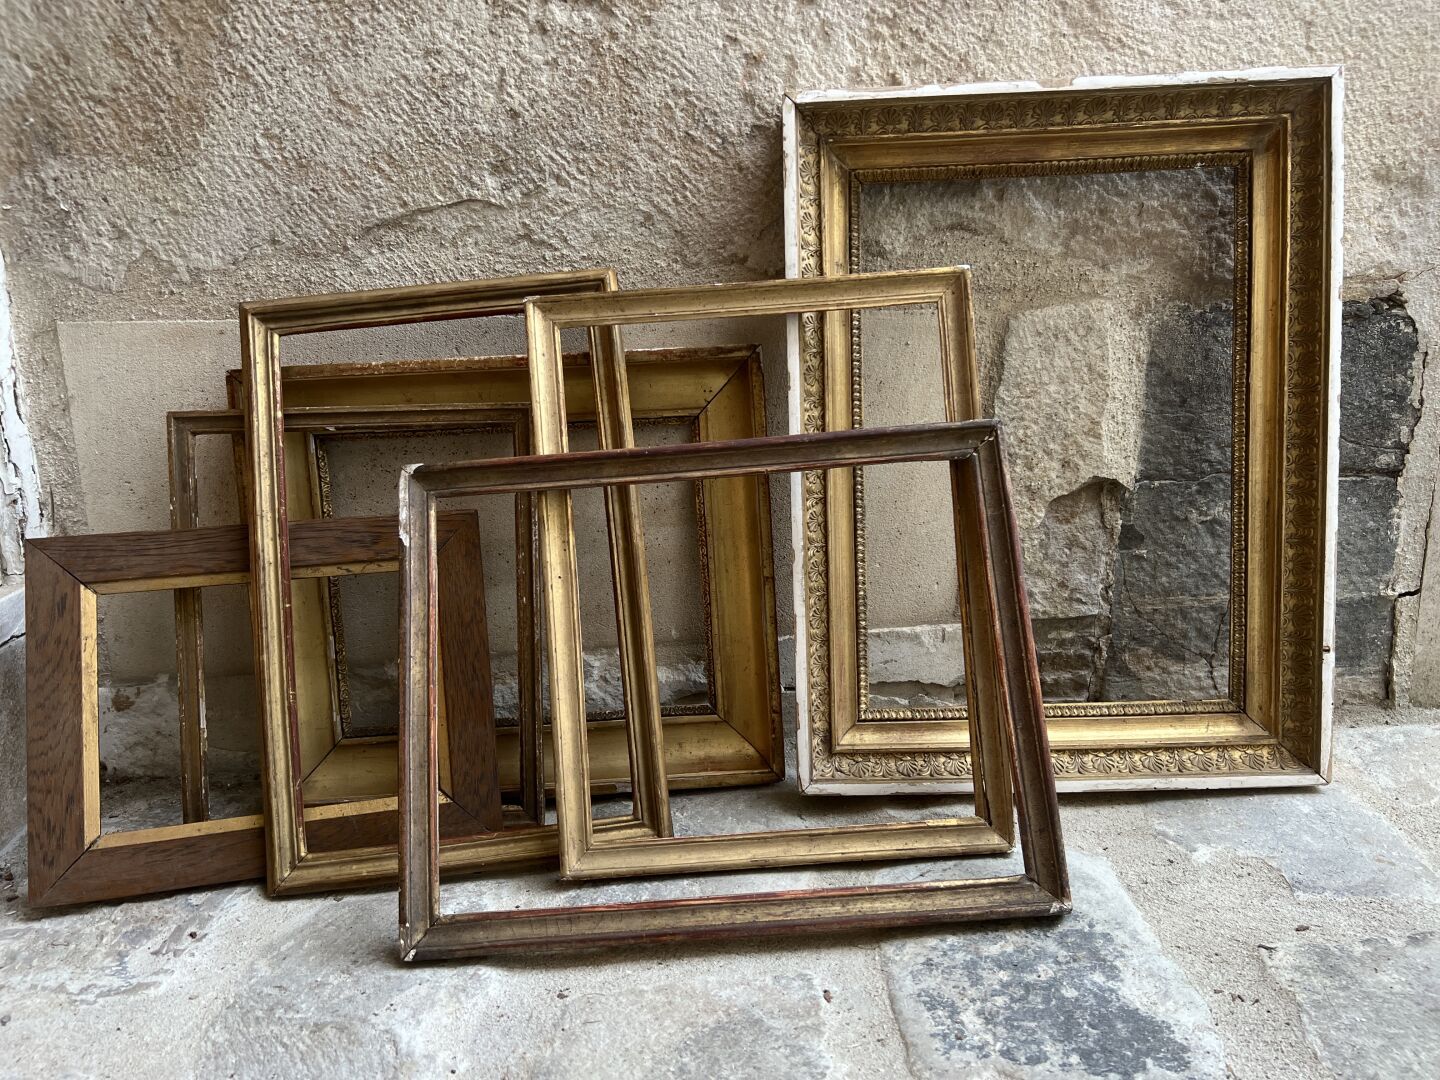 Null Lot von 6 Rahmen, darunter ein vergoldeter Empire-Rahmen.
46 x 35 cm